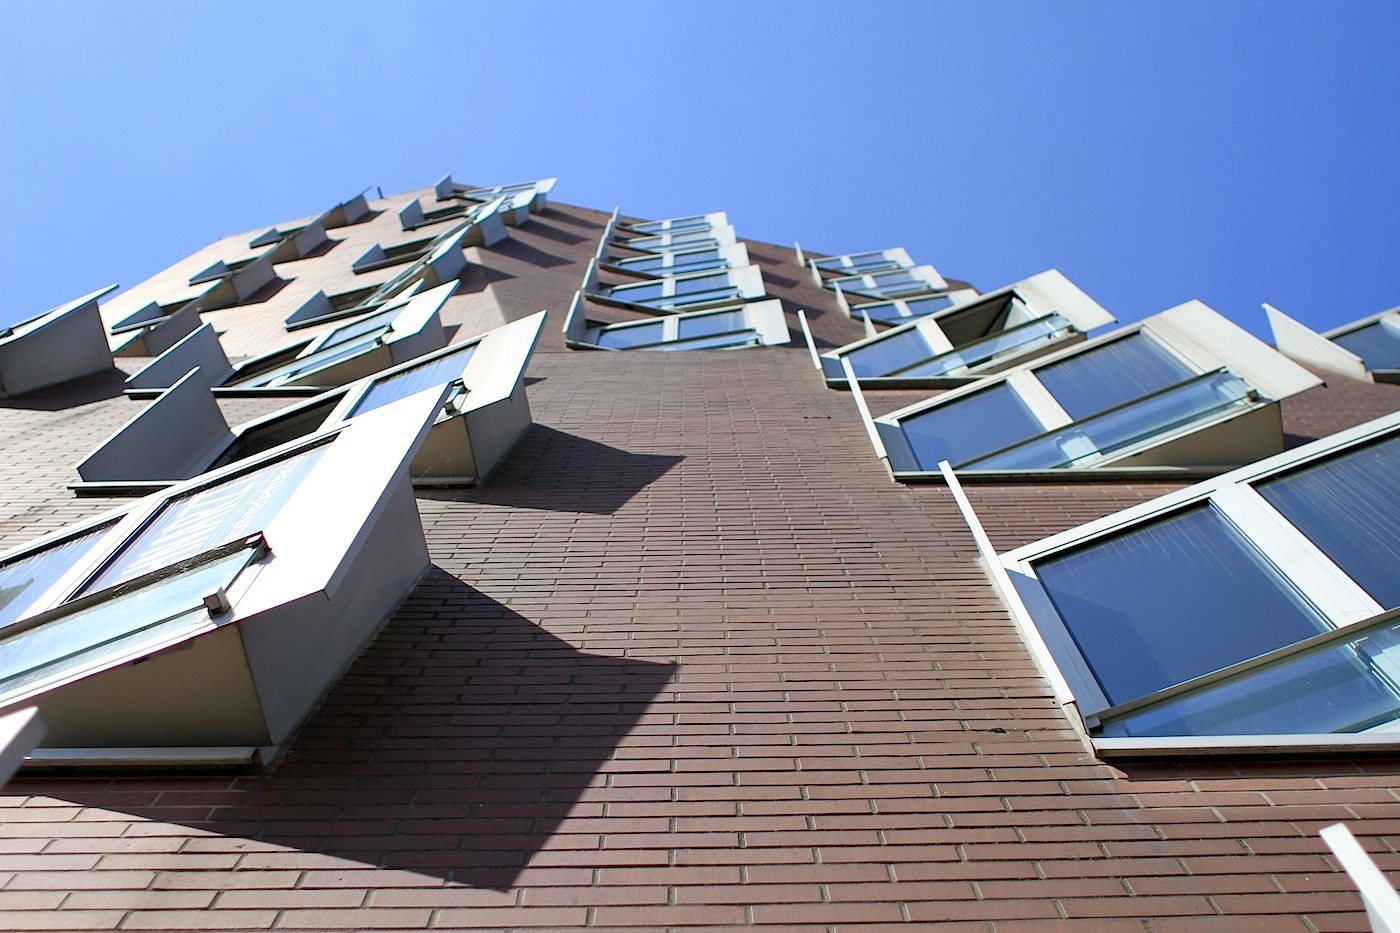 Neuer Zollhof 1–3. Jedes aus den Rundungen der Fassaden hervorspringende Fenster des skulpturalen Gebäudekomplexes entstand in Sonderanfertigung.